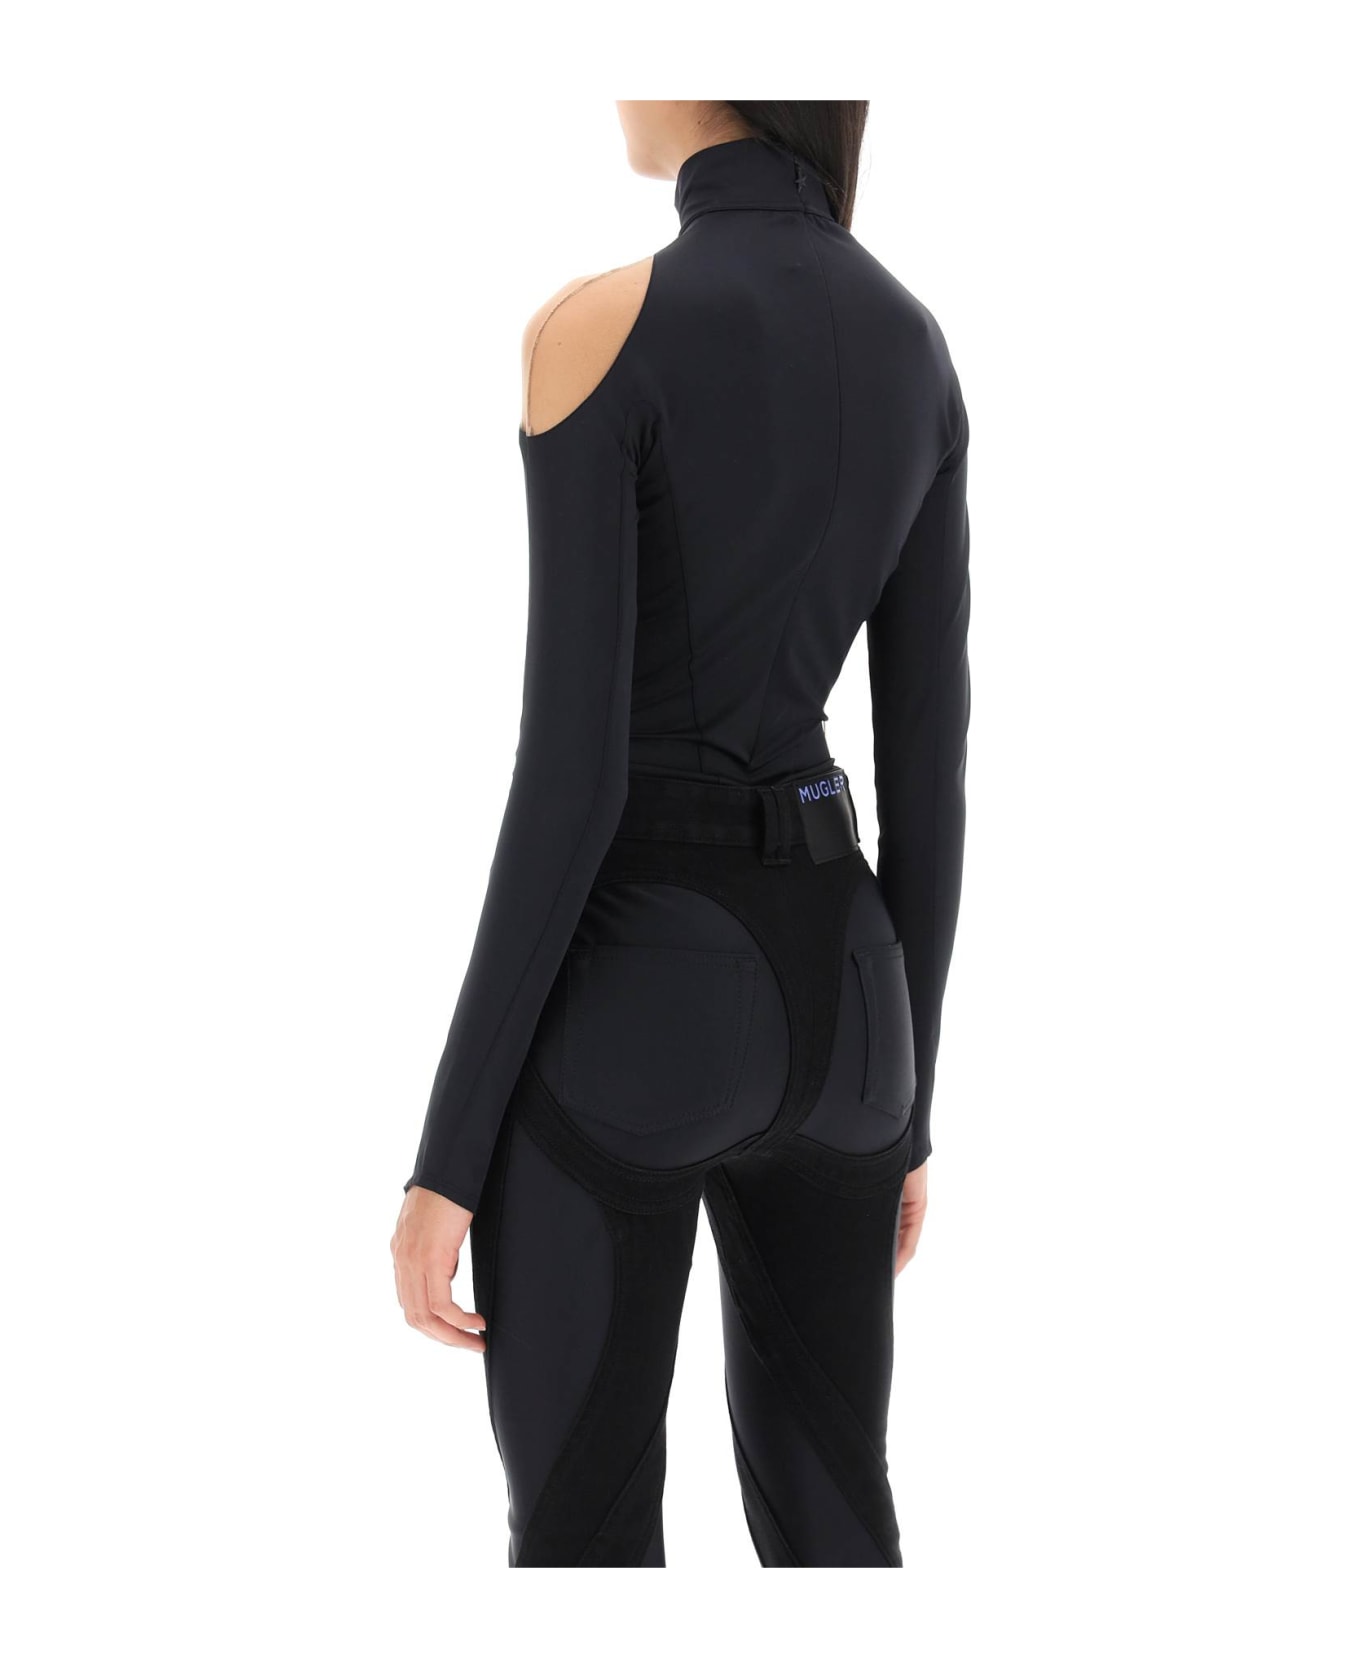 Mugler Long-sleeved Swirly Bodysuit - BLACK NUDE01 (Black)